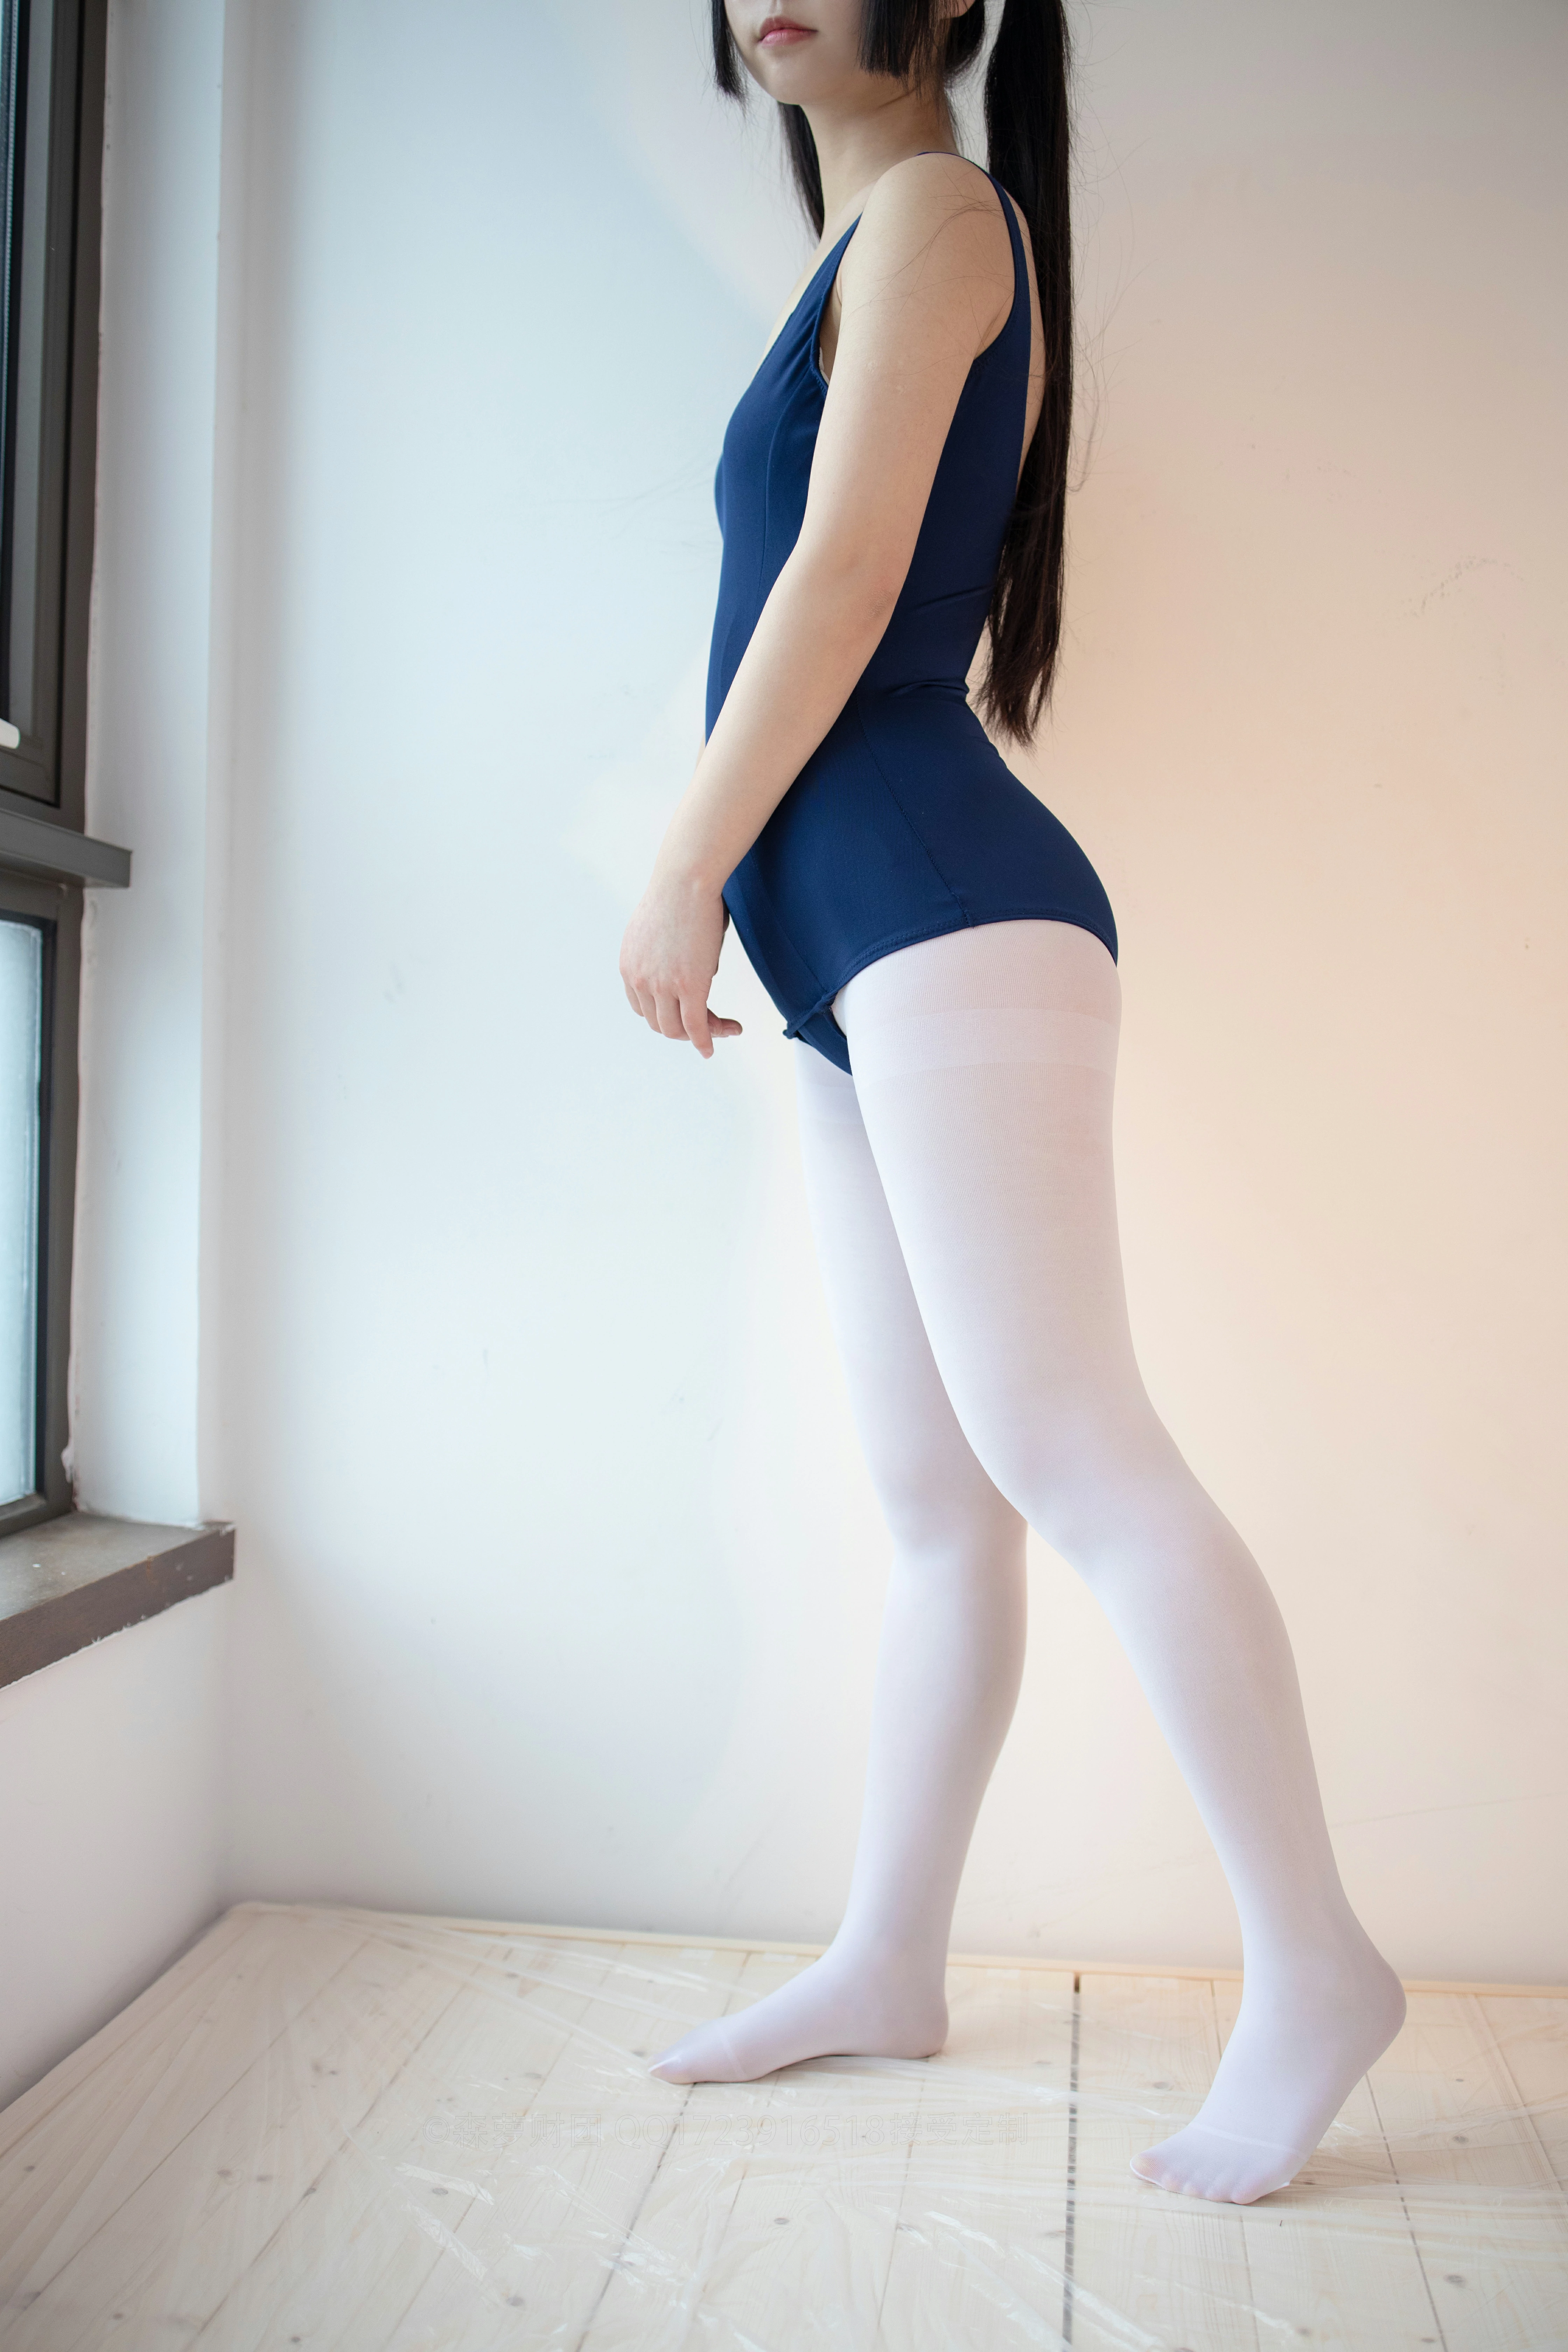 [森萝财团]X-048 性感诱人小萝莉 蓝色连体运动内衣加白色丝袜美腿玉足私房写真集,